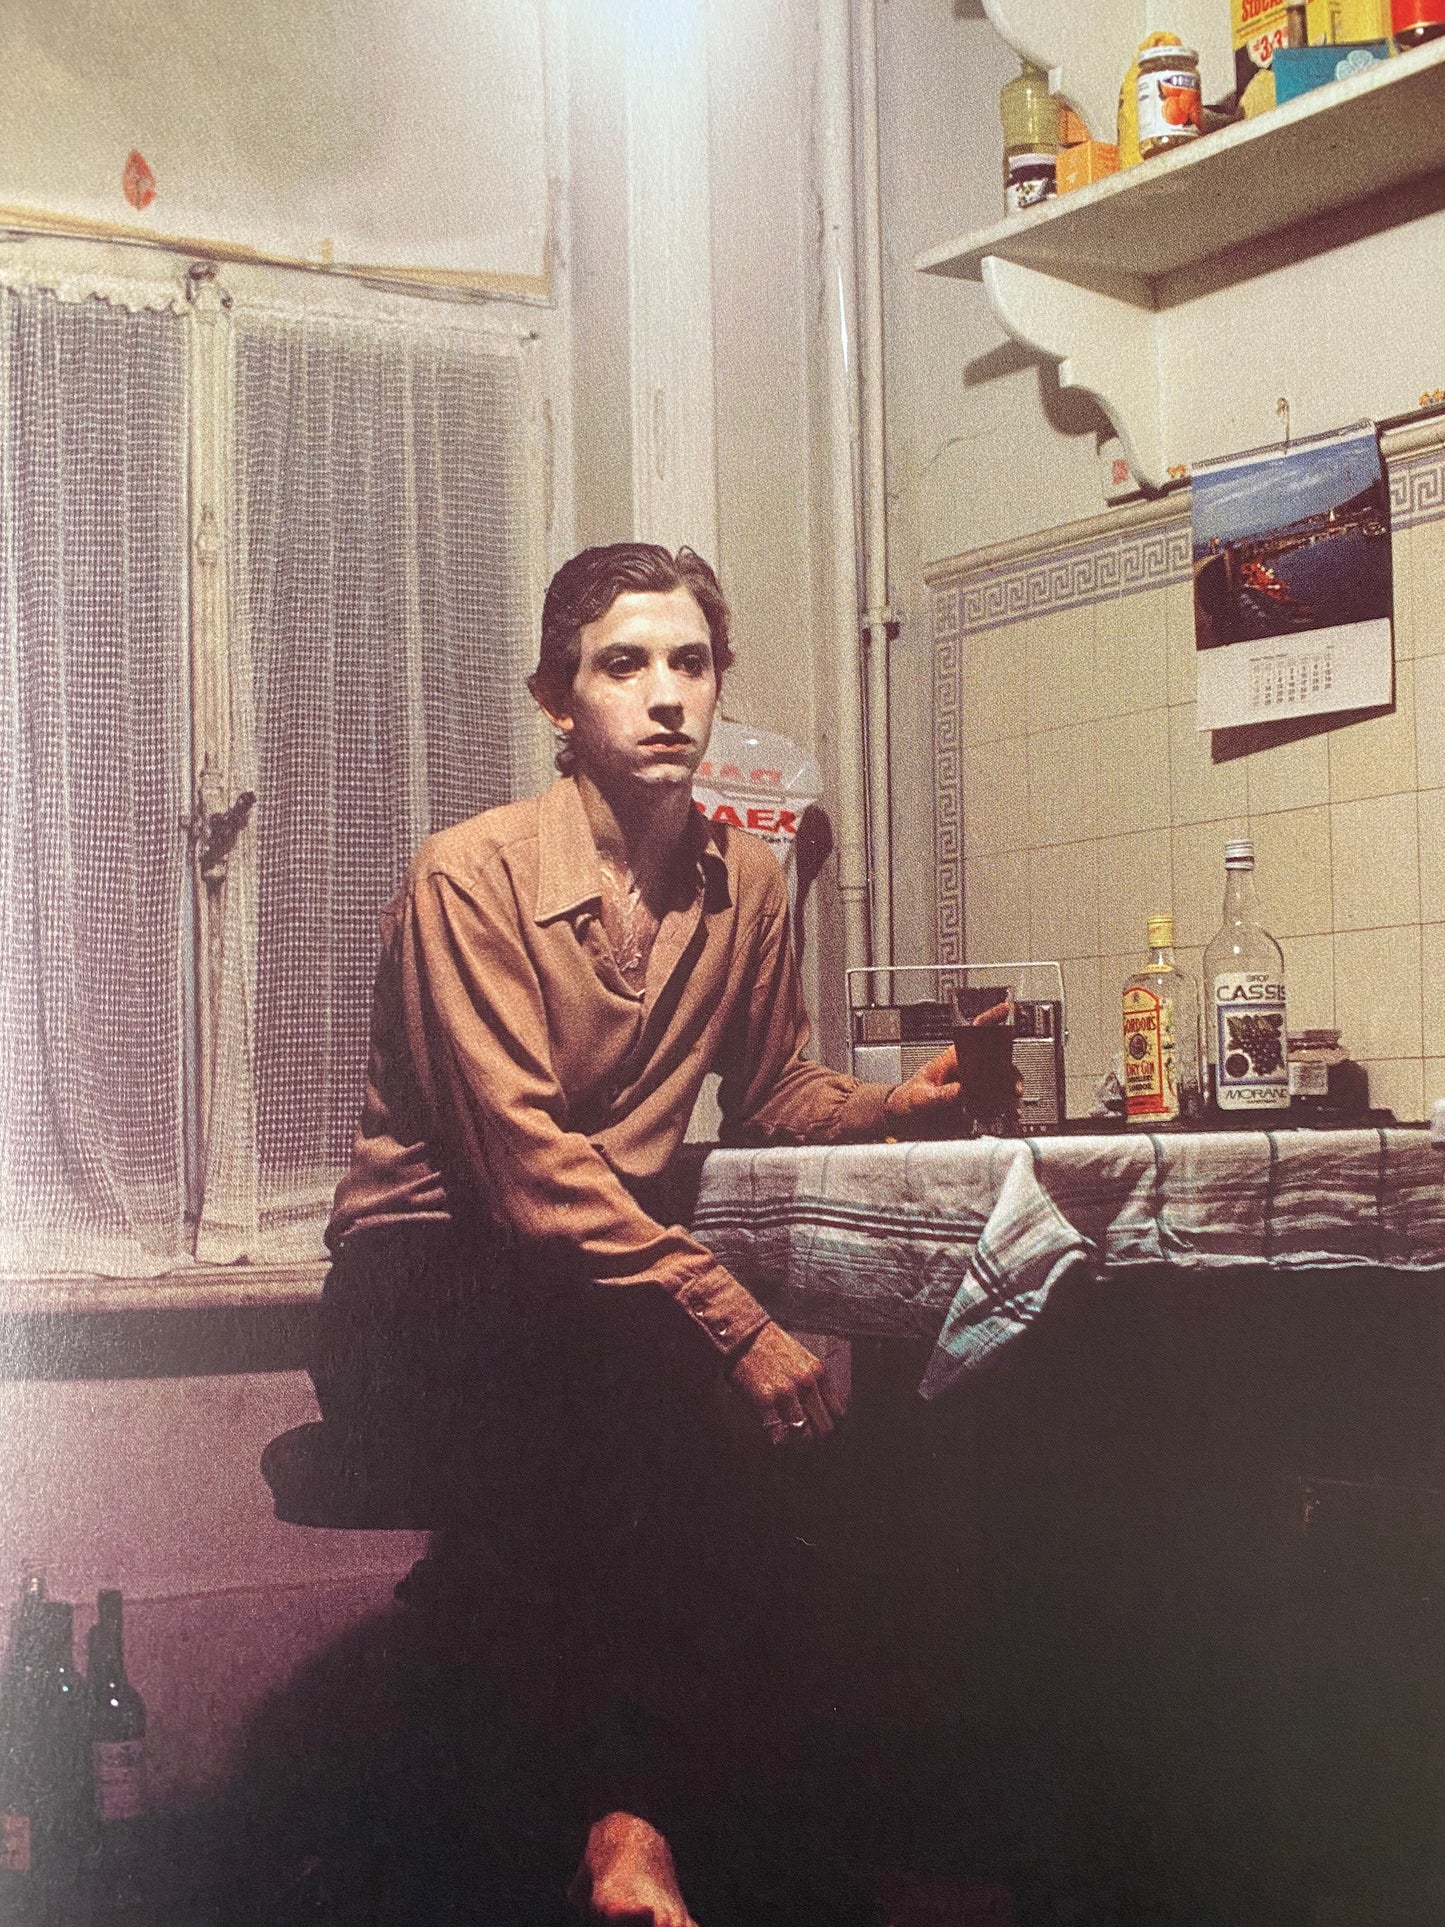 Luciano Castelli - Self-Portrait 1973-1986 (2014)